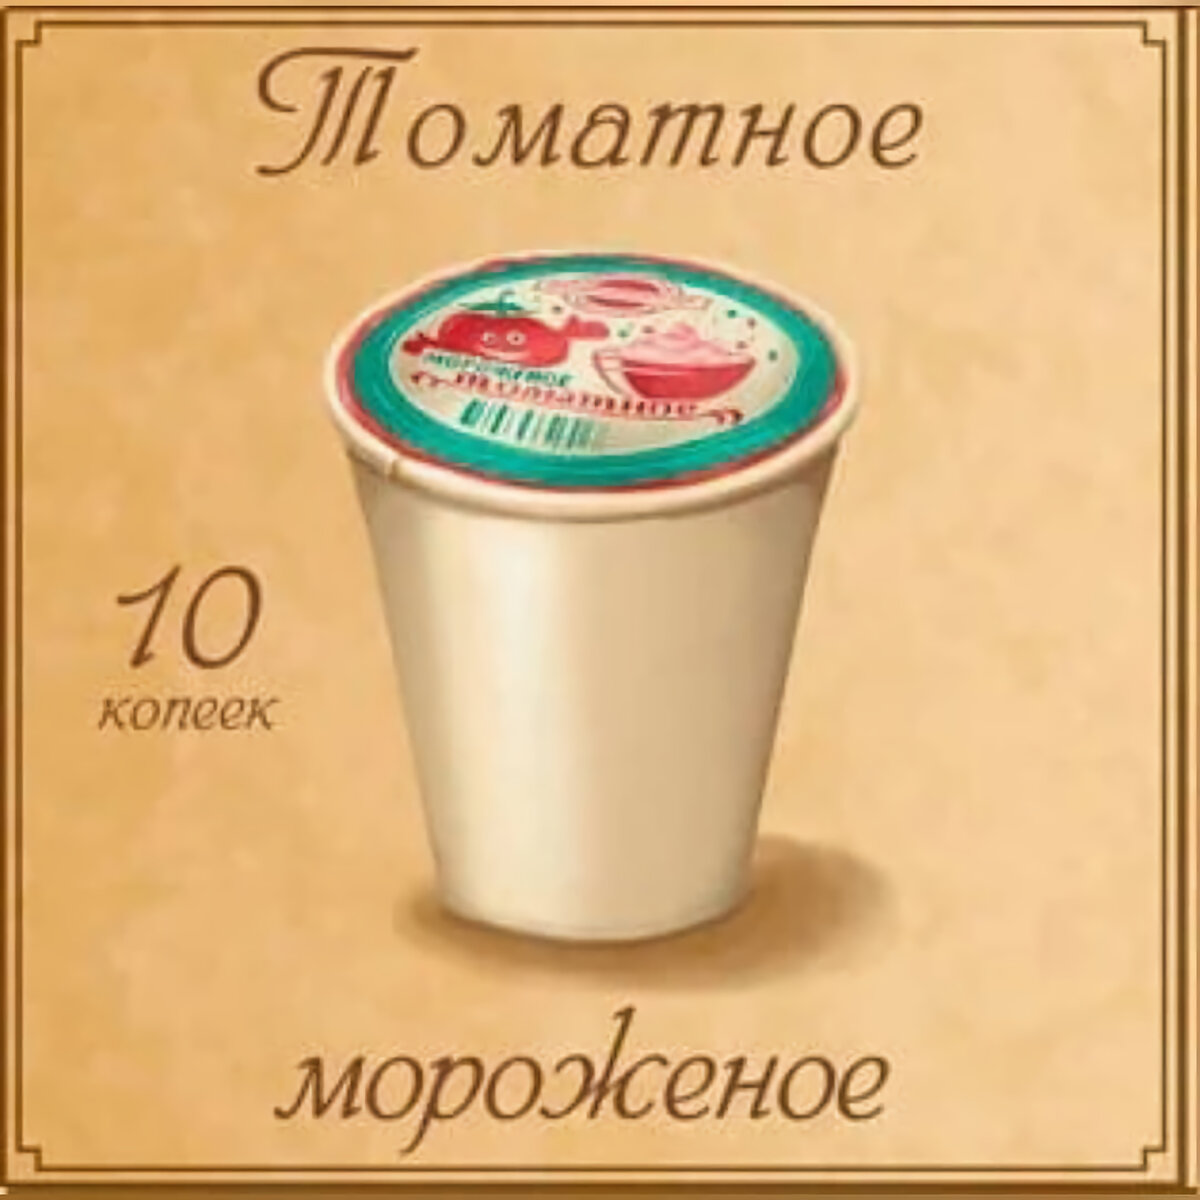 Рисунок из рекламы советского мороженого. Фото: instagram.com/p/CIIDGfMDHr5/?hl=de